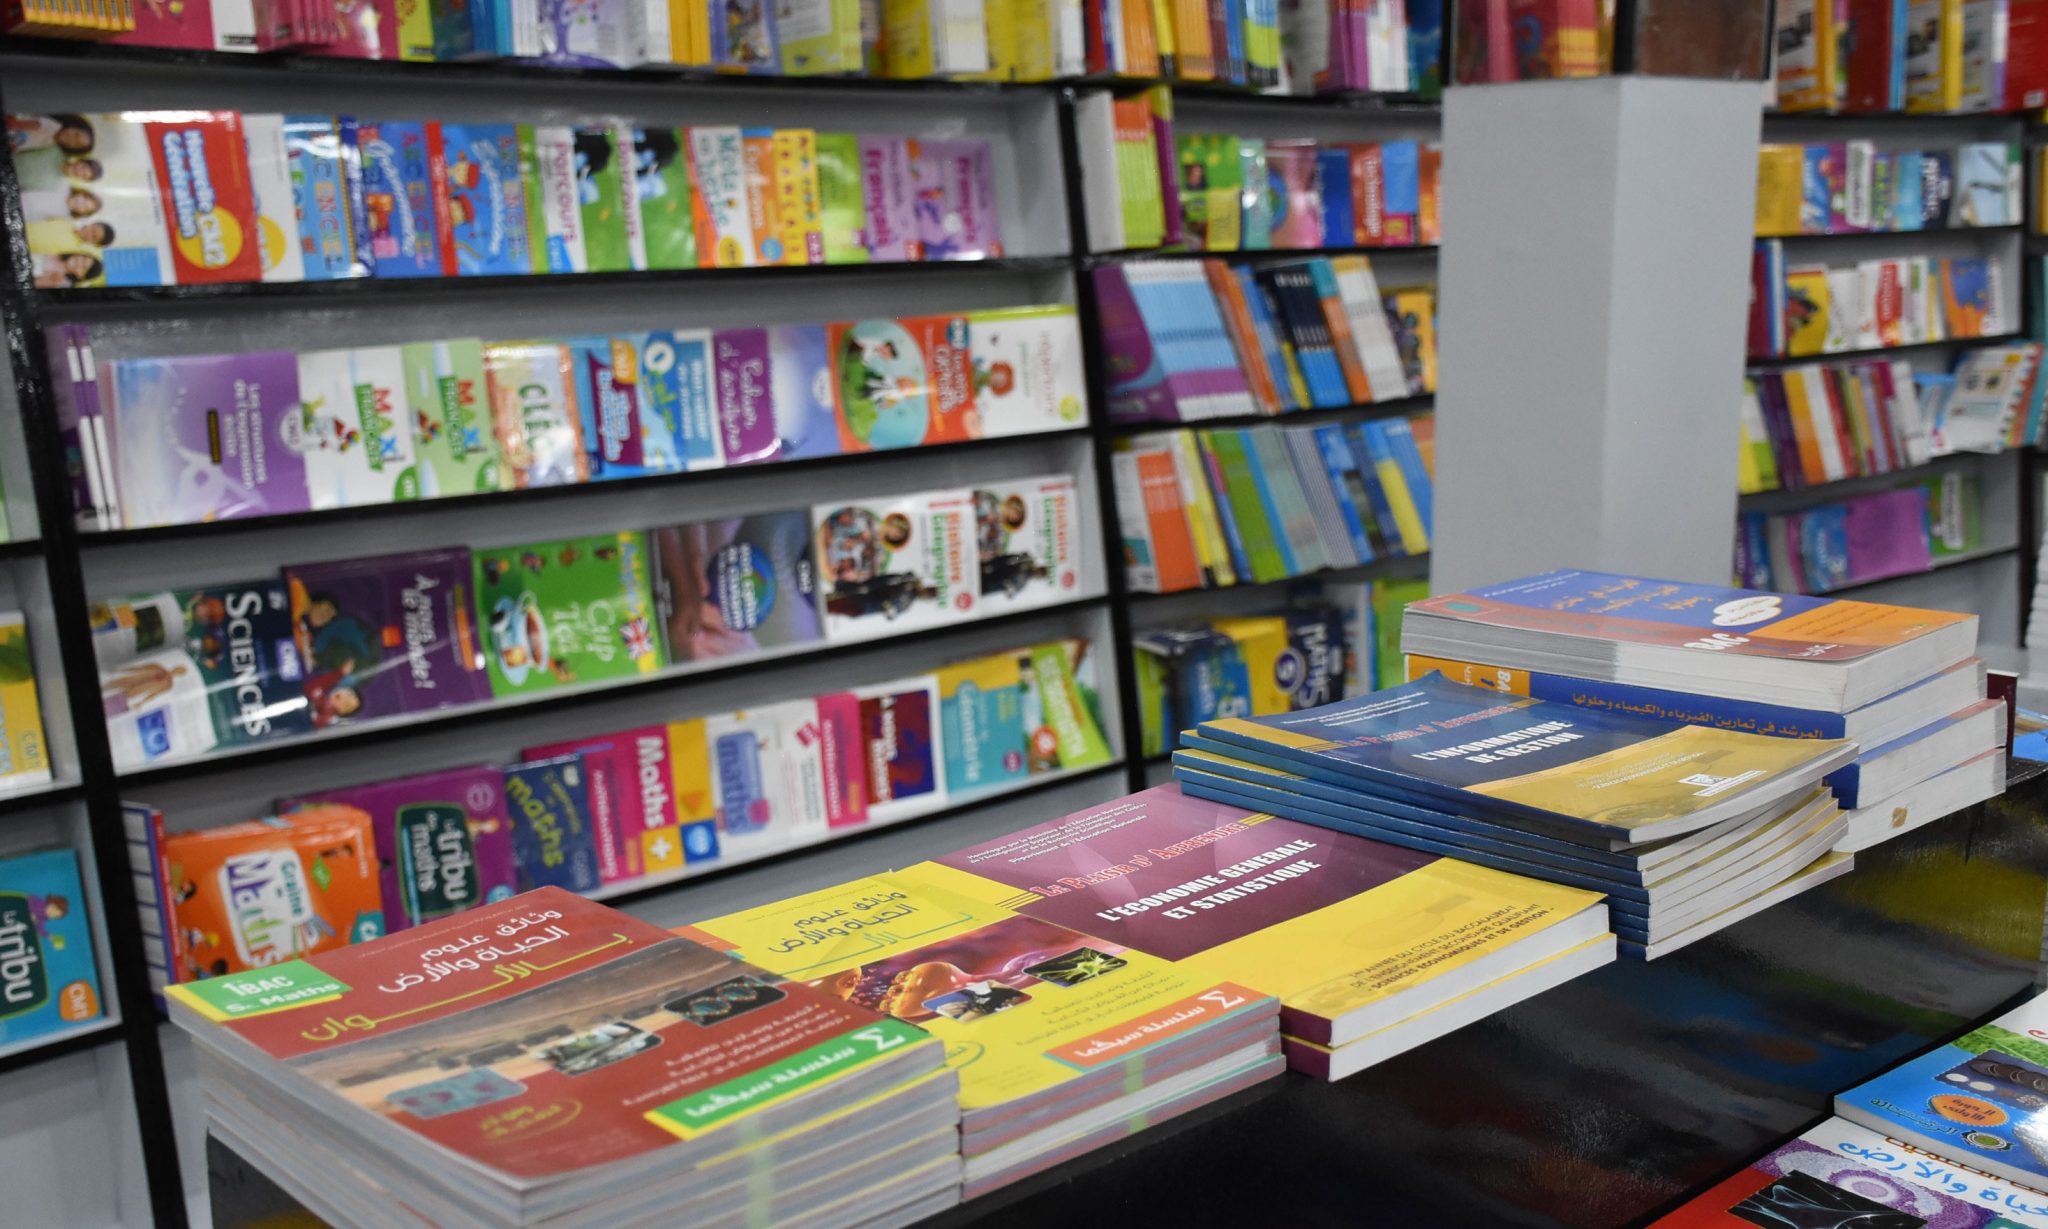 الحكومة تقول إن مساع قائمة مع الناشرين لعدم إقرار أي زيادة في أسعار الكتاب المدرسي